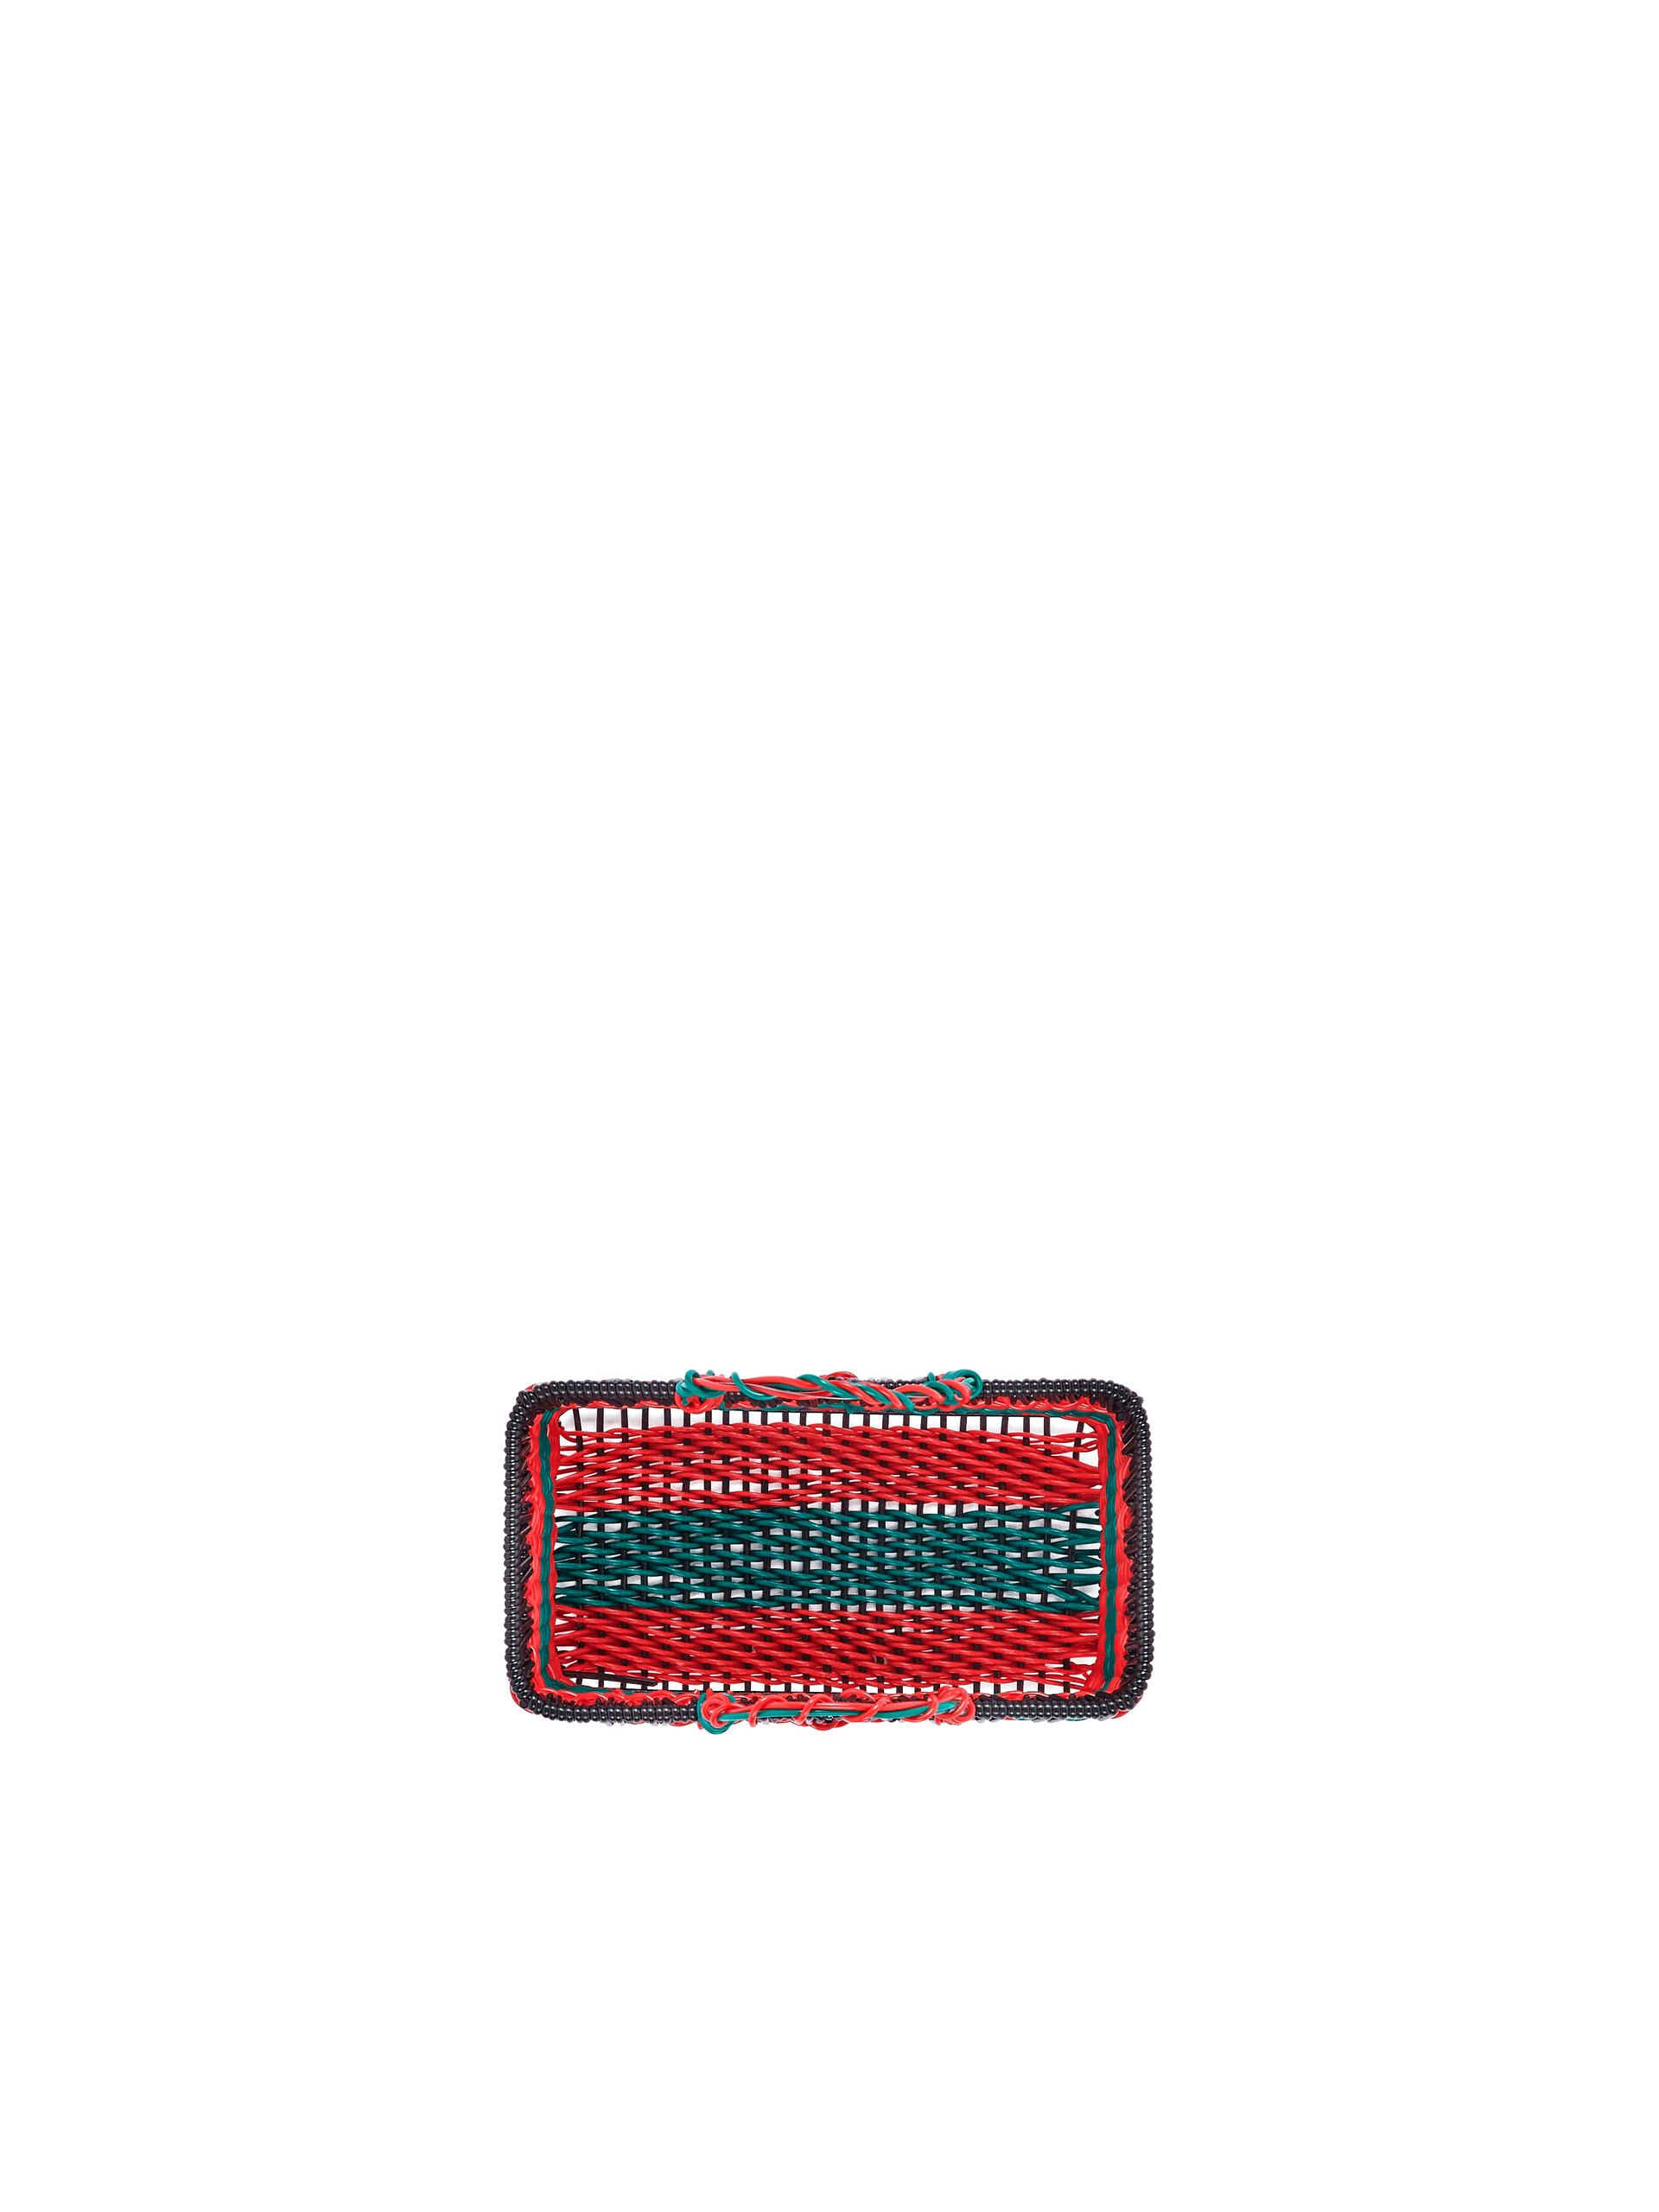 MARNI MARKET Korb in Grün und Rot - Accessoires - Image 4